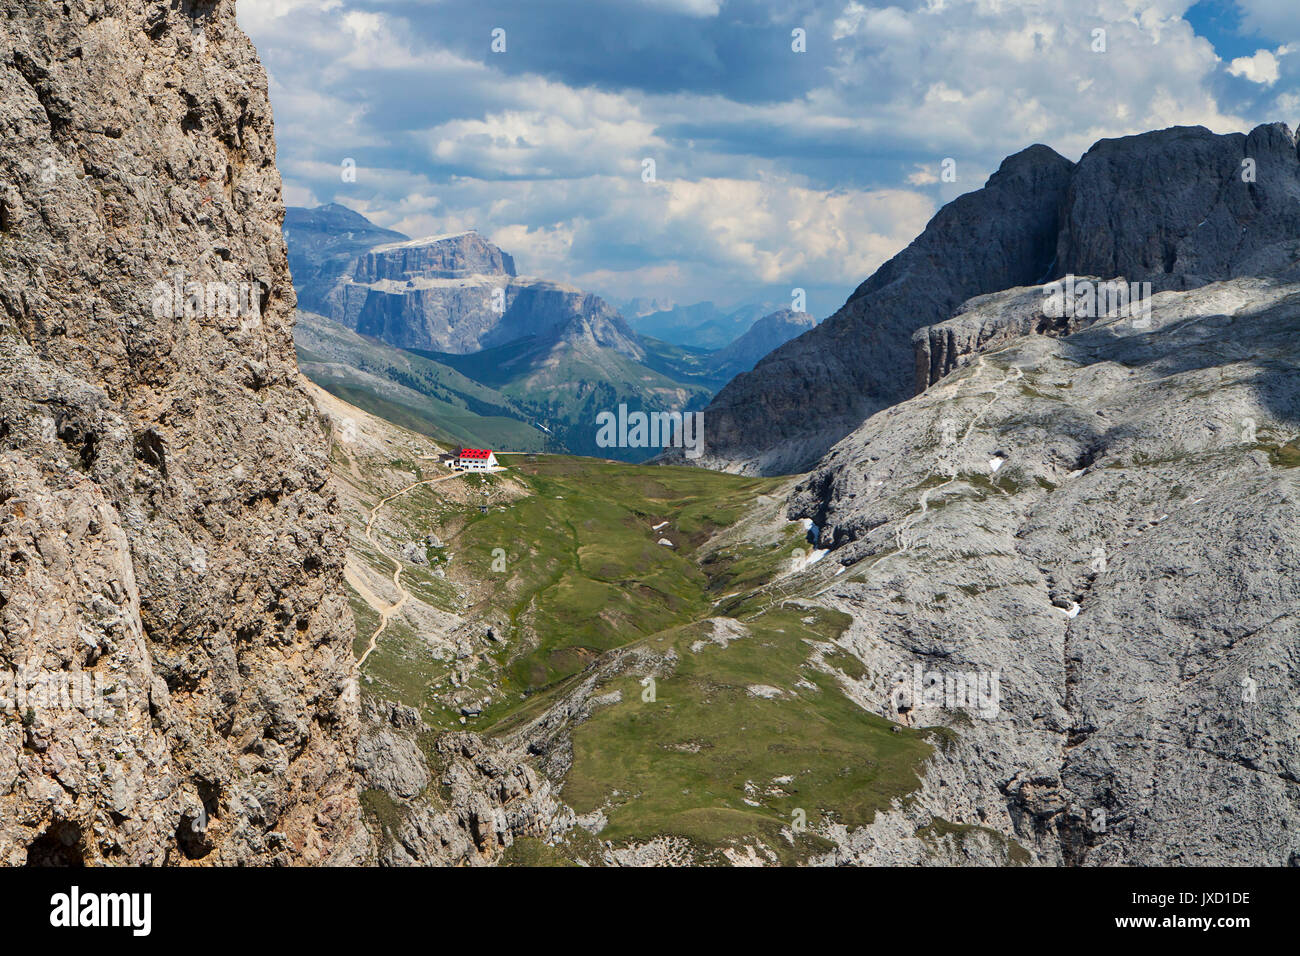 Alpe di siusi, Dolomites, Northern Italy, Refugio Alpe di Tires Stock Photo